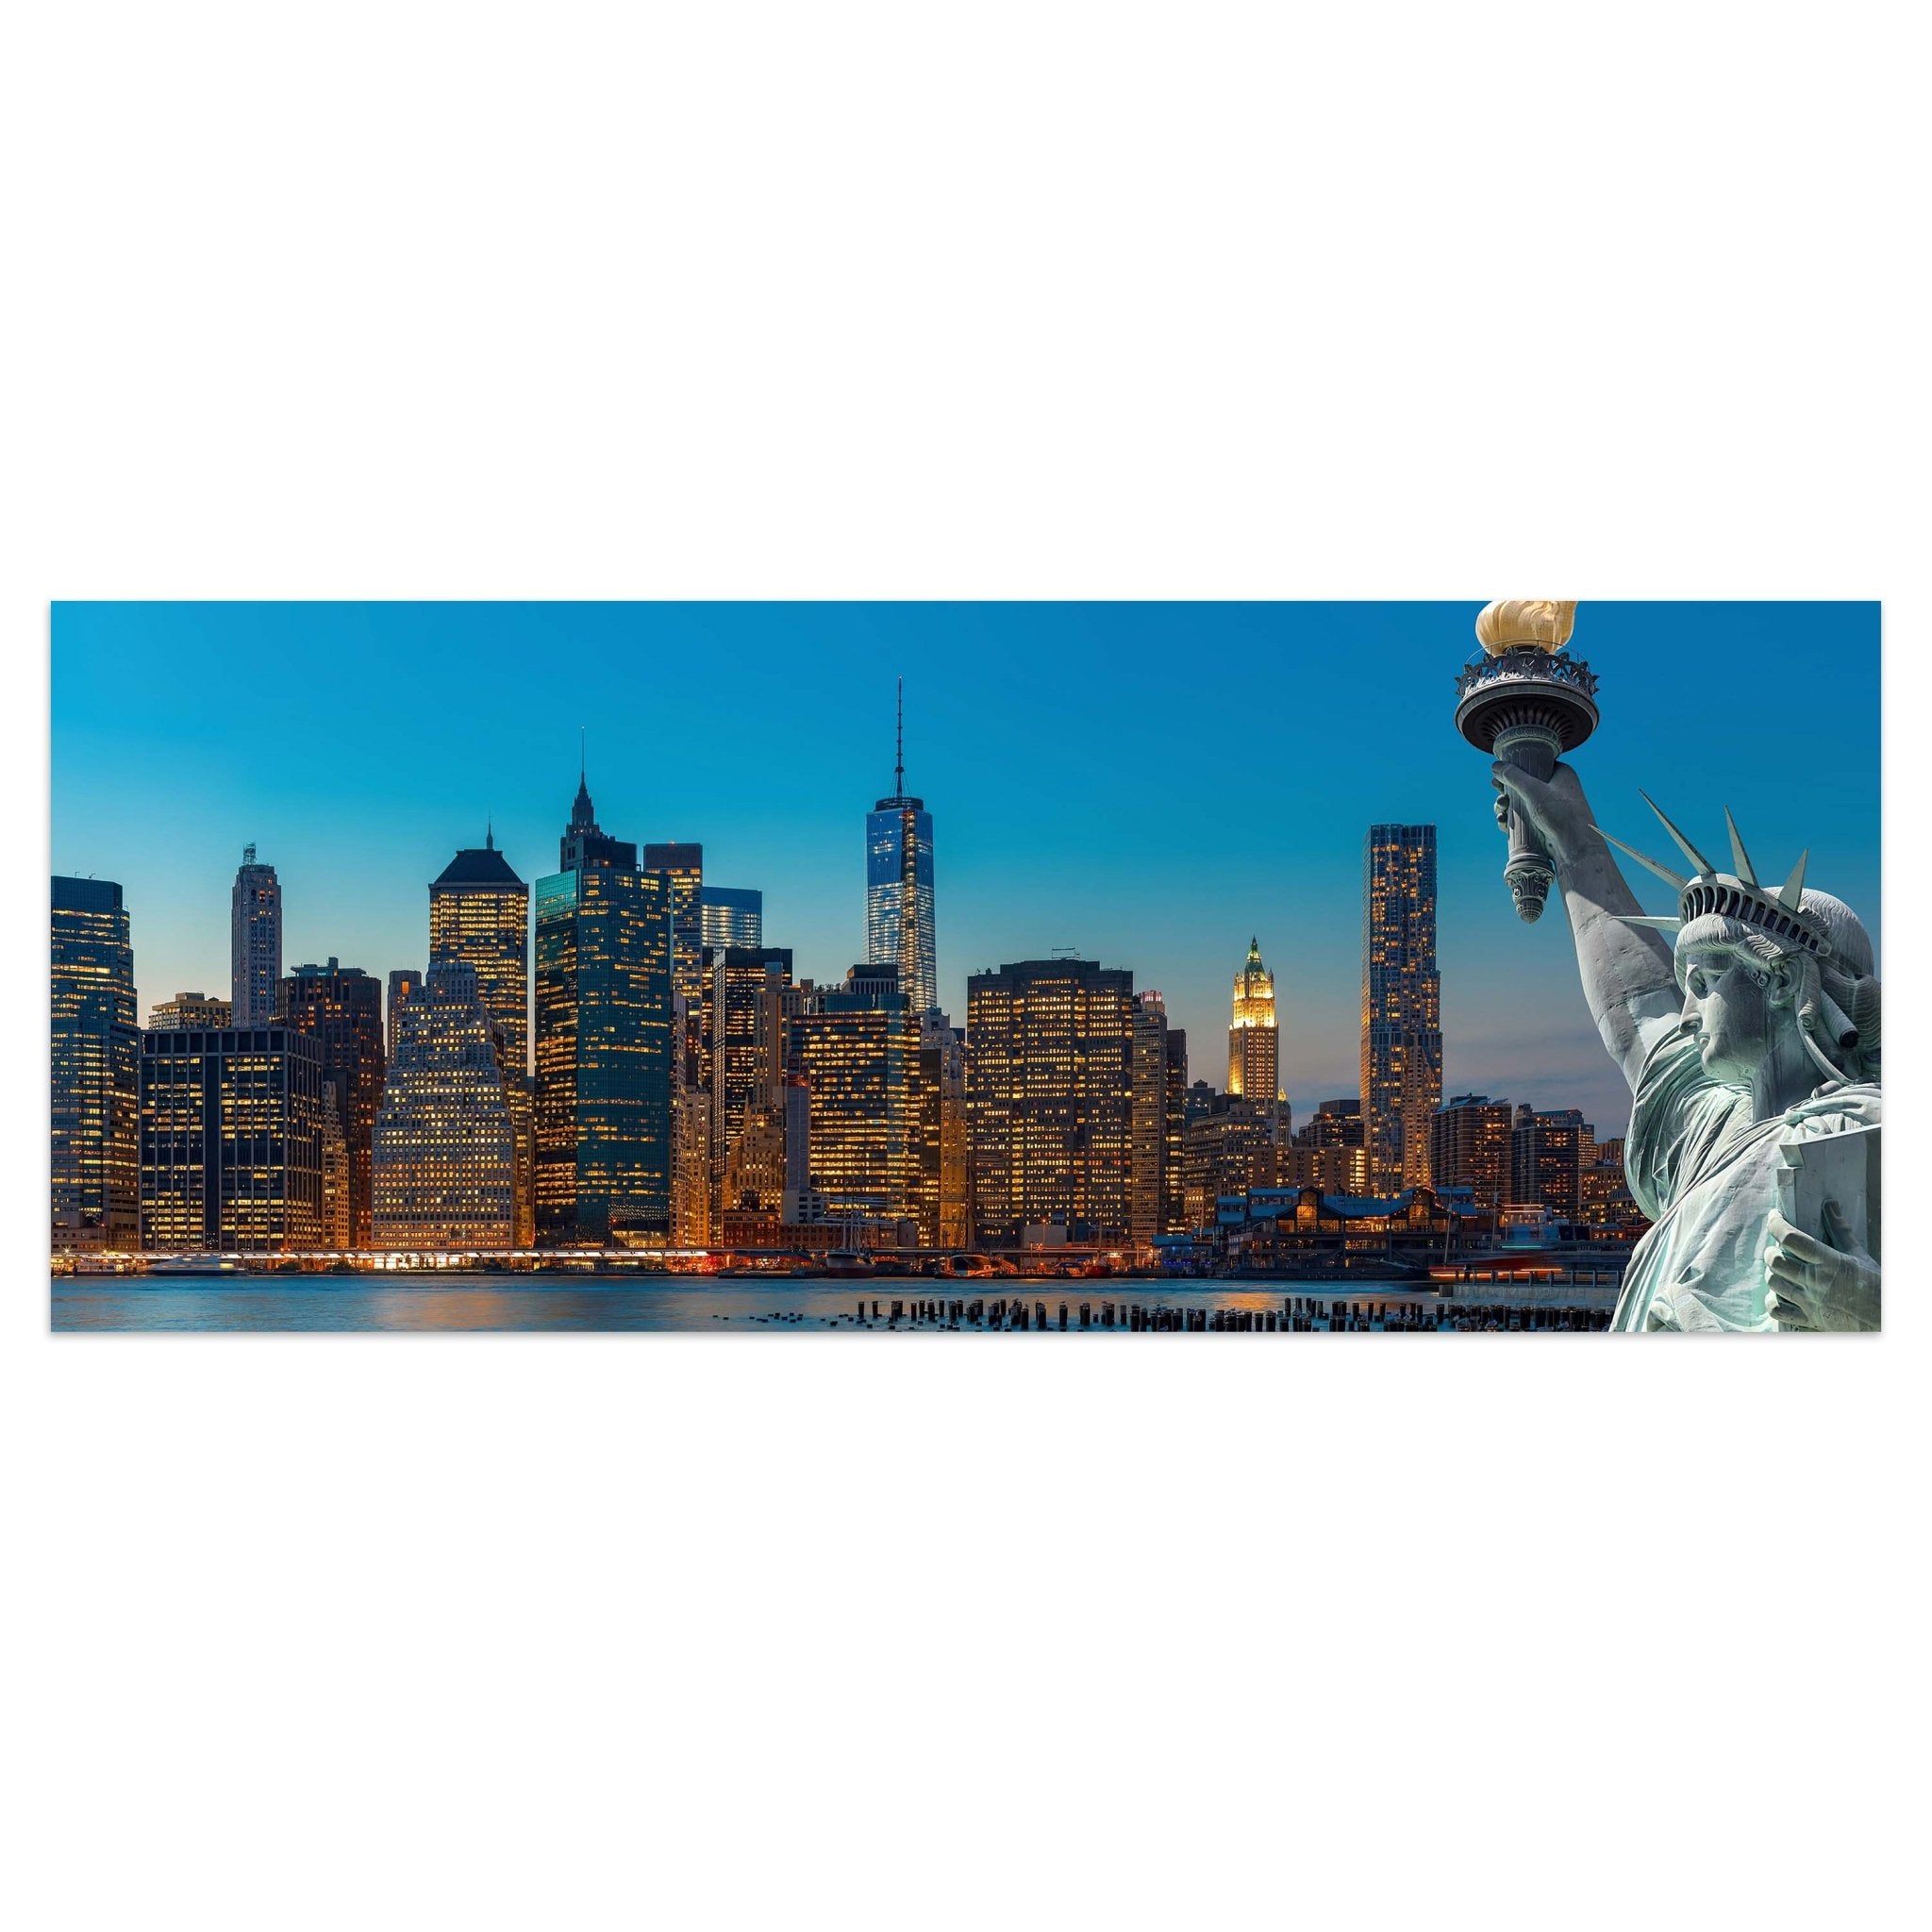 Leinwandbild New York Skyline Freiheitsstatue M0726 kaufen - Bild 1